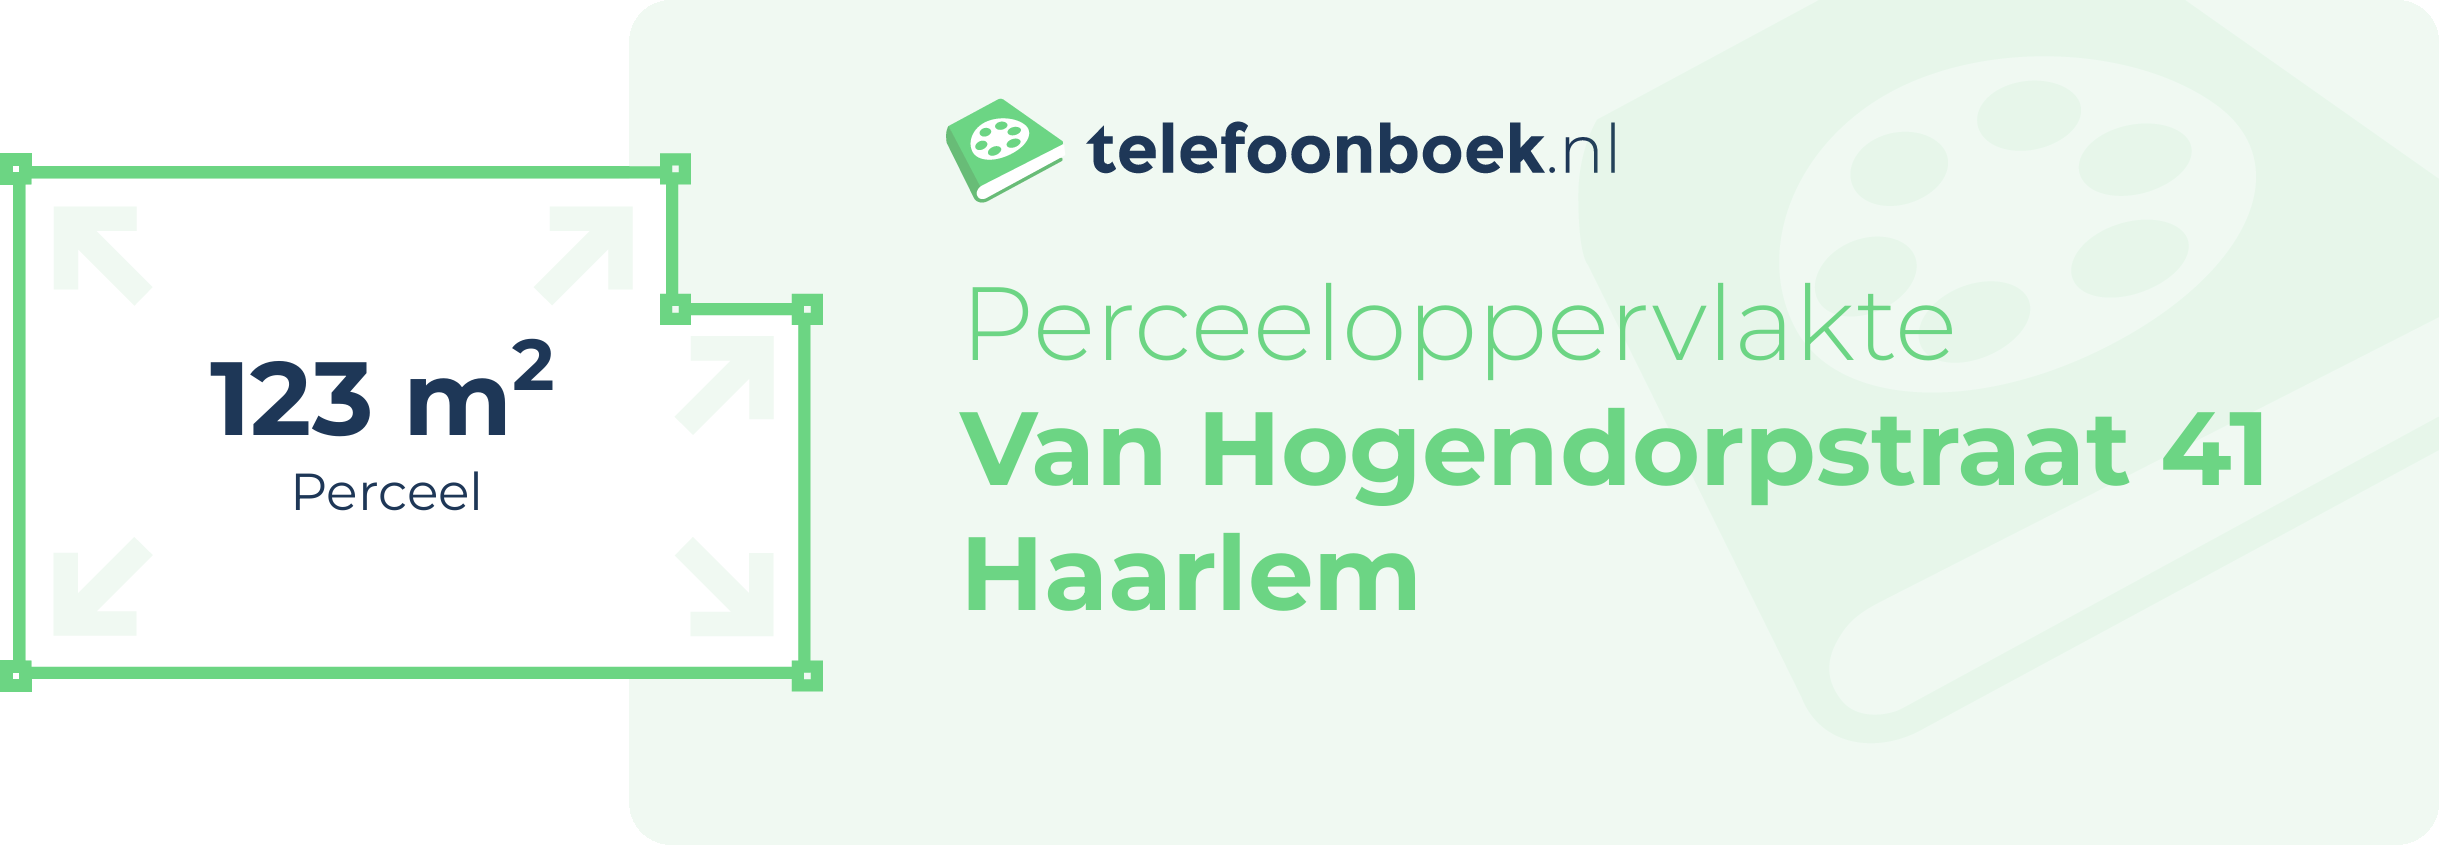 Perceeloppervlakte Van Hogendorpstraat 41 Haarlem